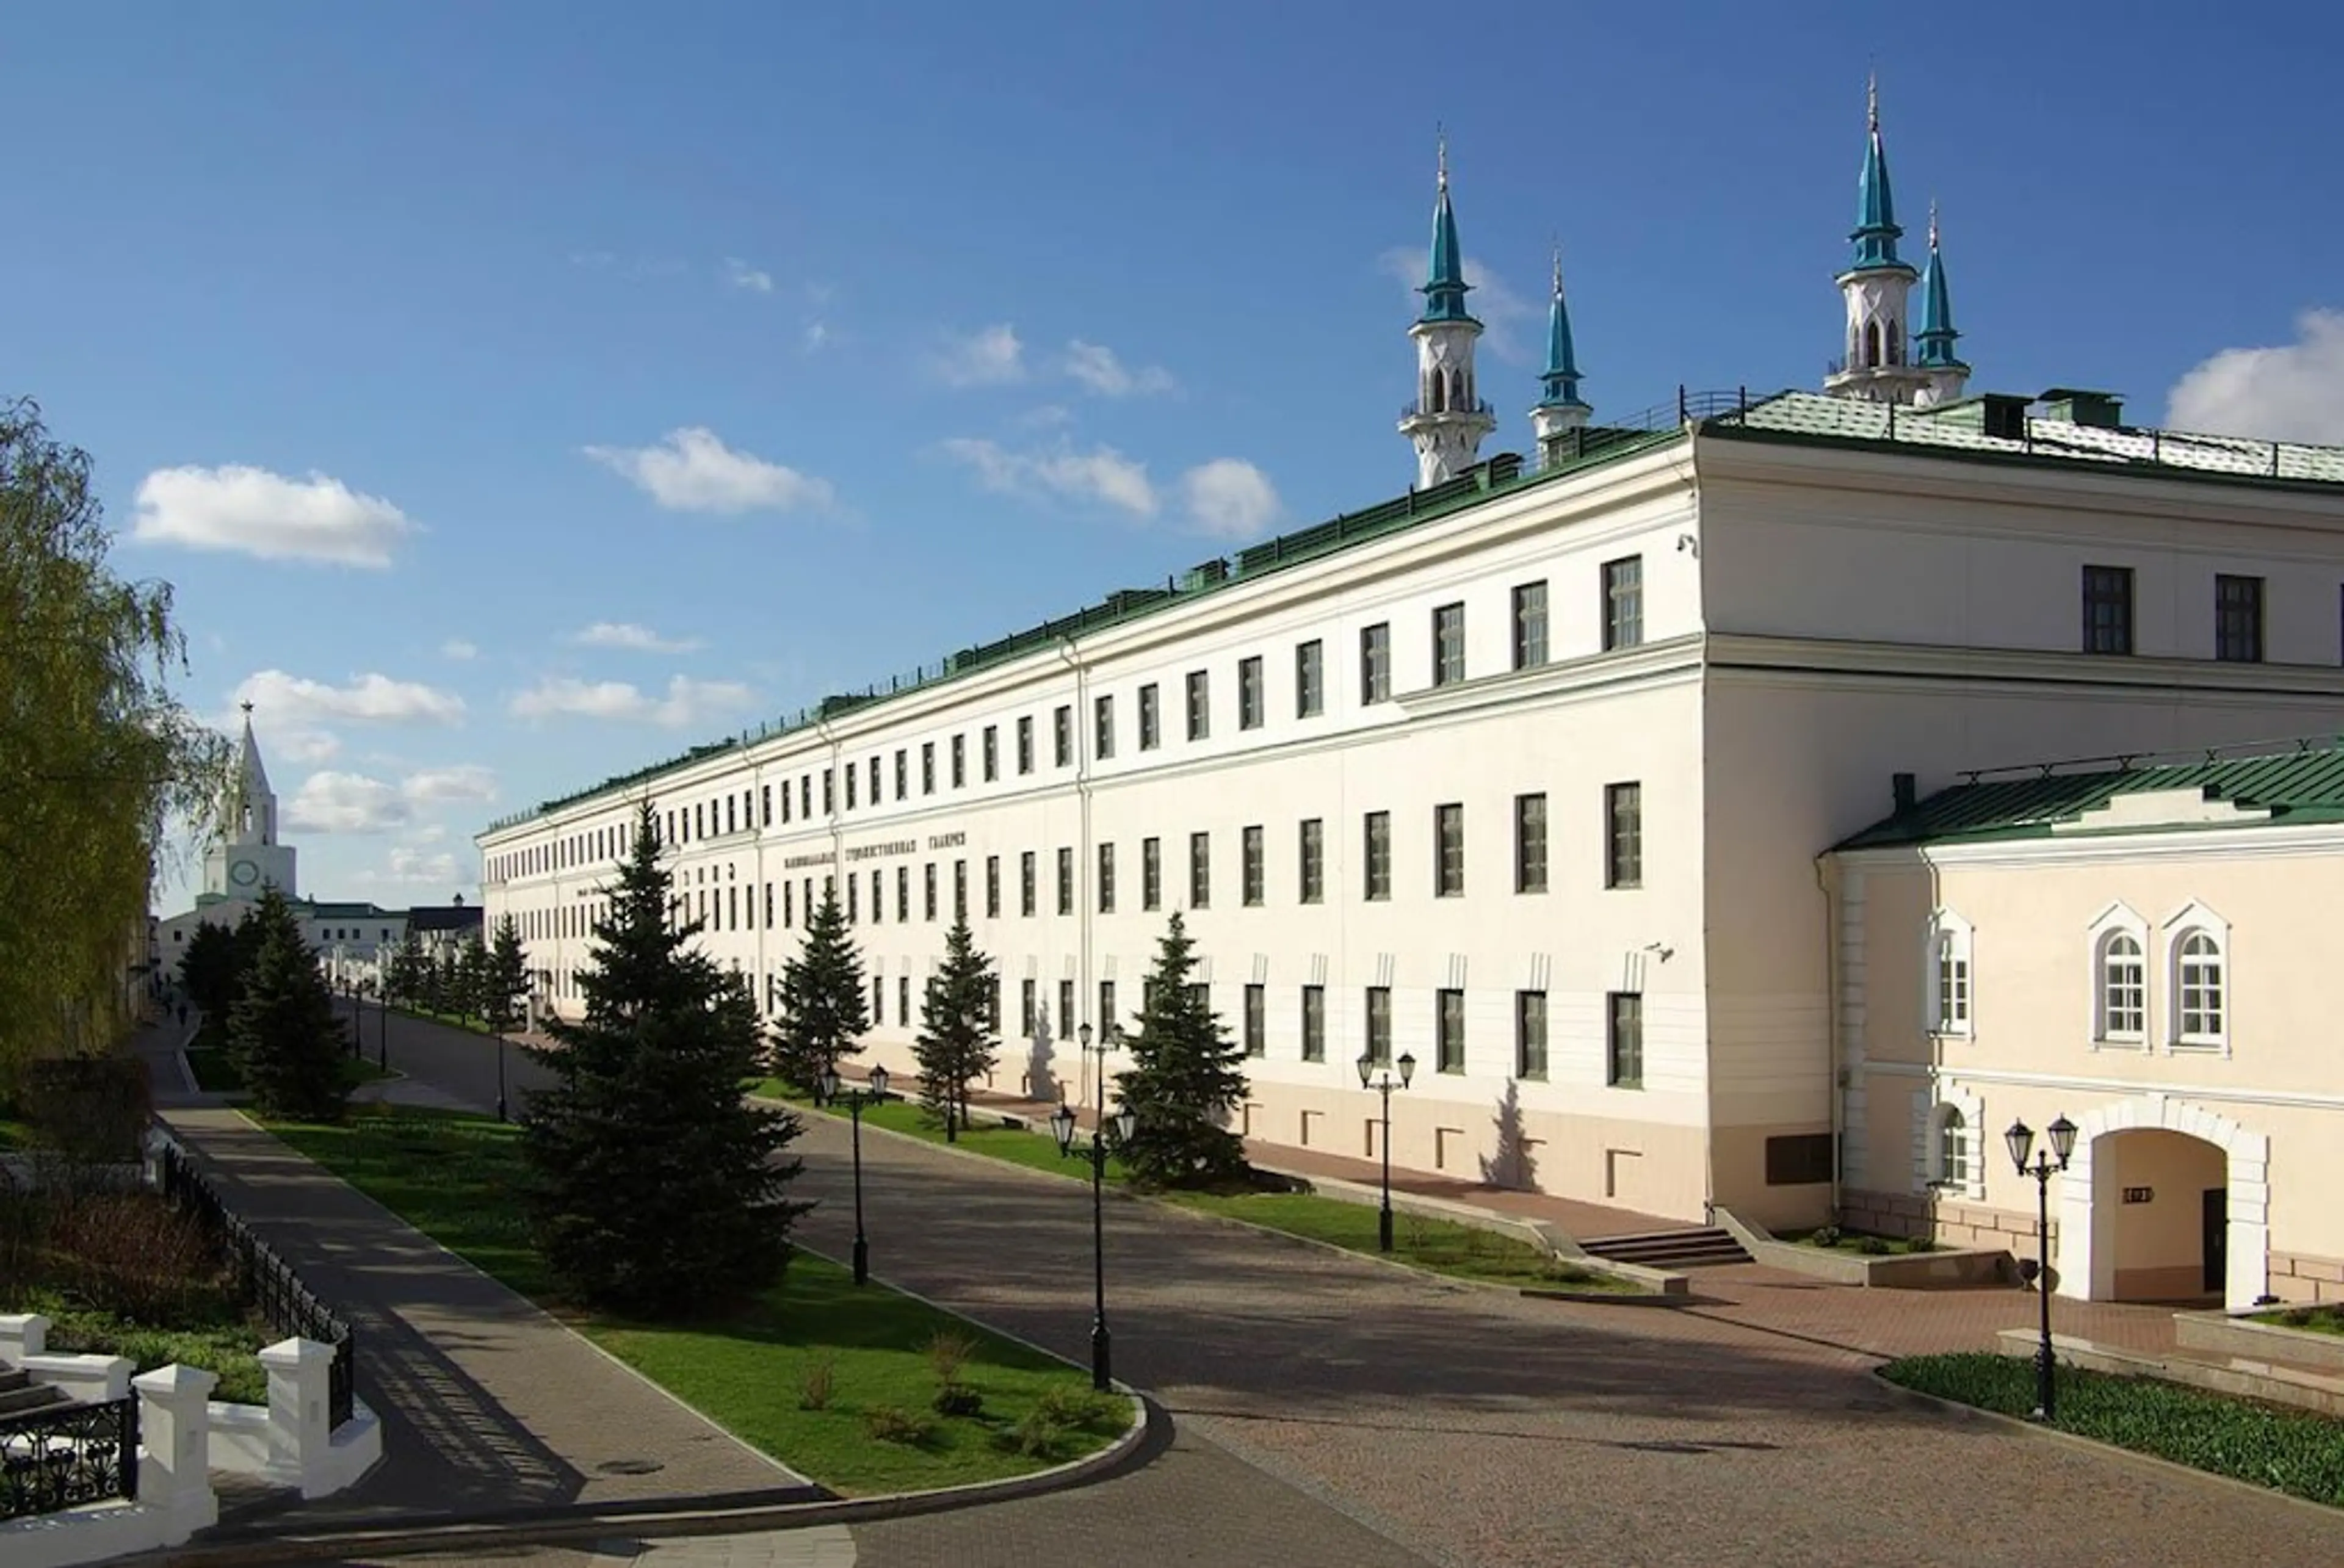 Hermitage-Kazan Exhibition Center